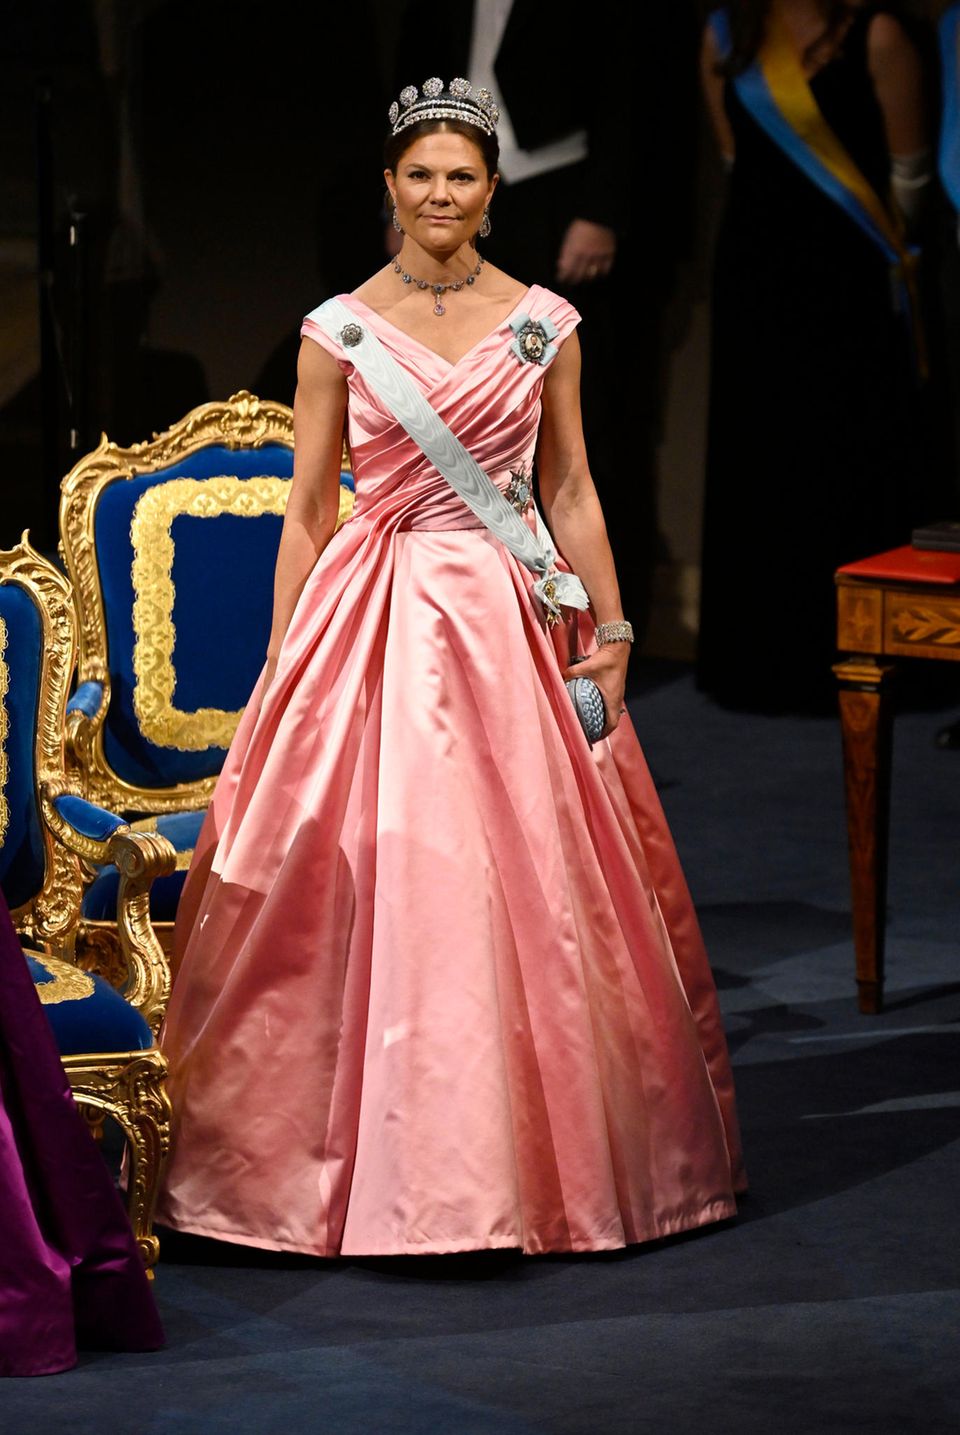 Prinzessin Victoria zeigt sich hingegen mit rosafarbener Seide in einem zarten Rosa und gesteppter Clutch in Babyblau.